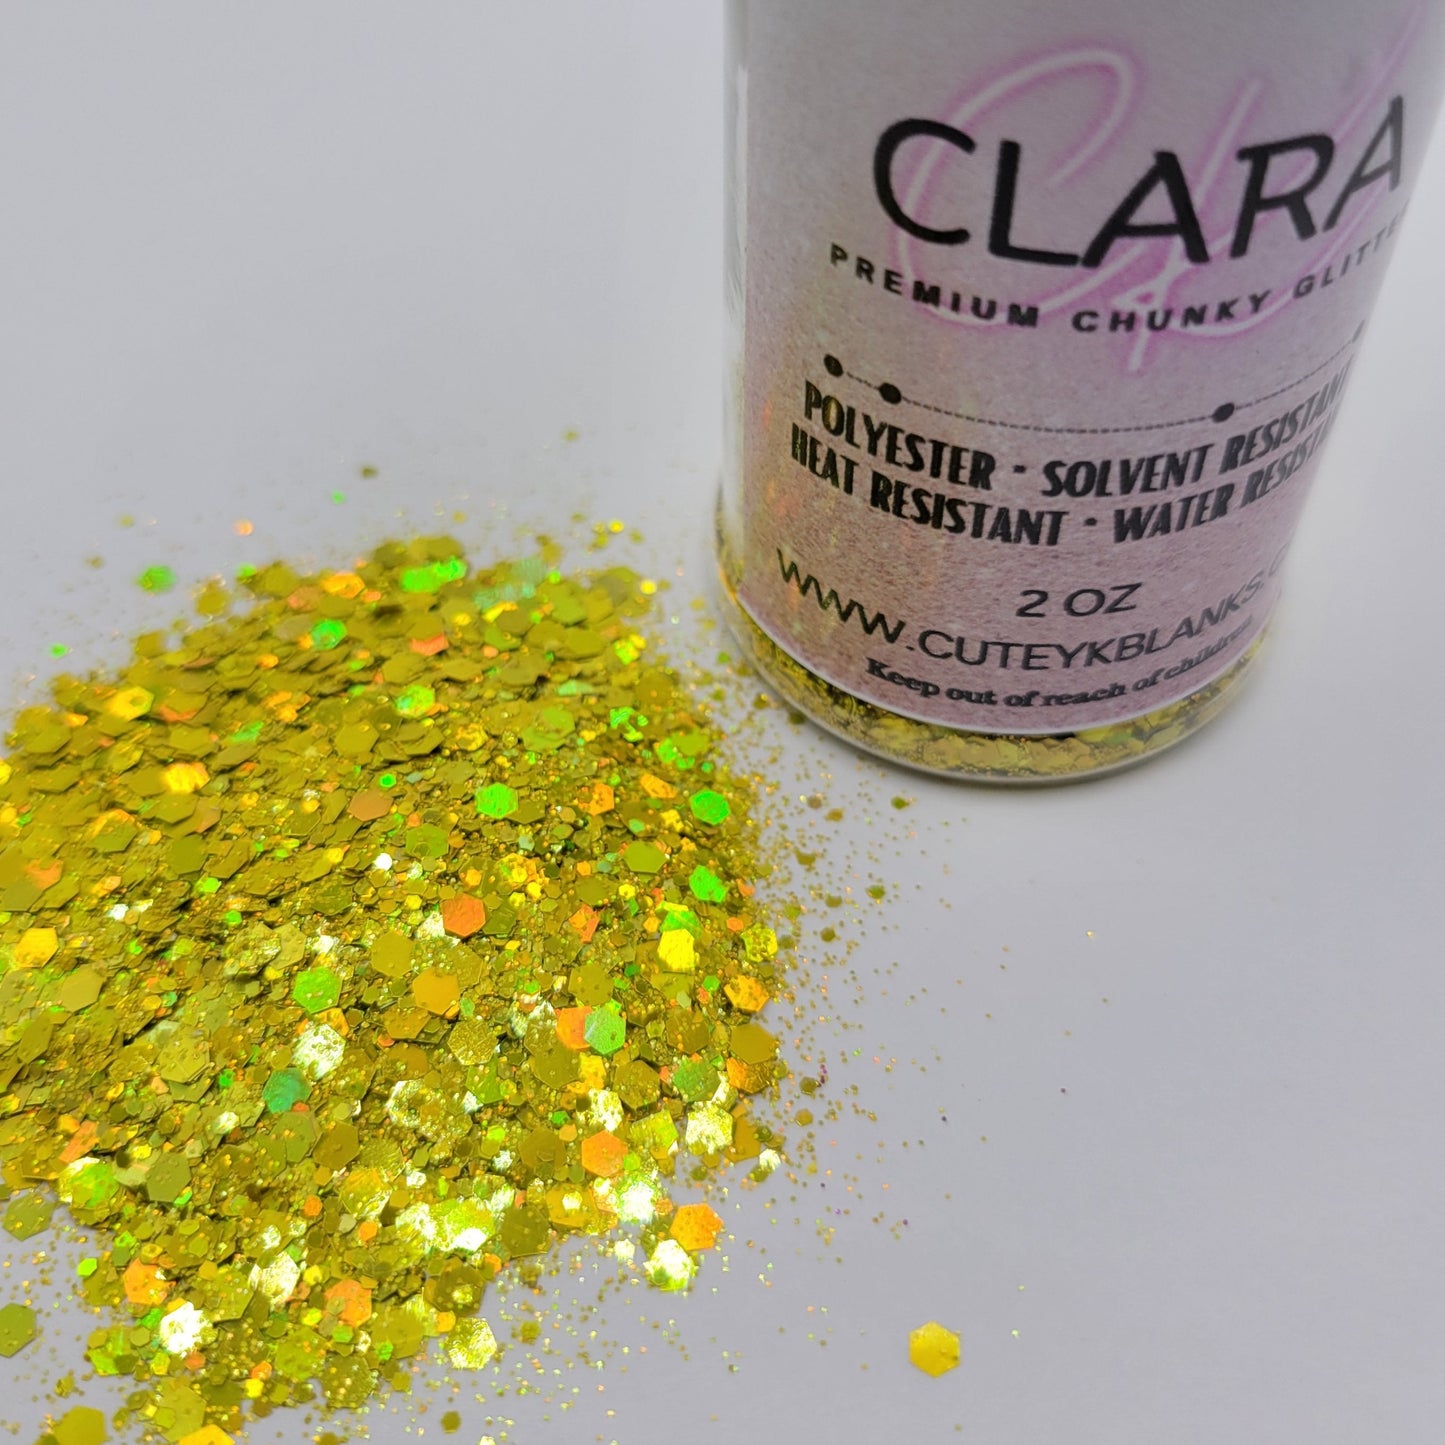 Clara - Premium Chunky Glitter